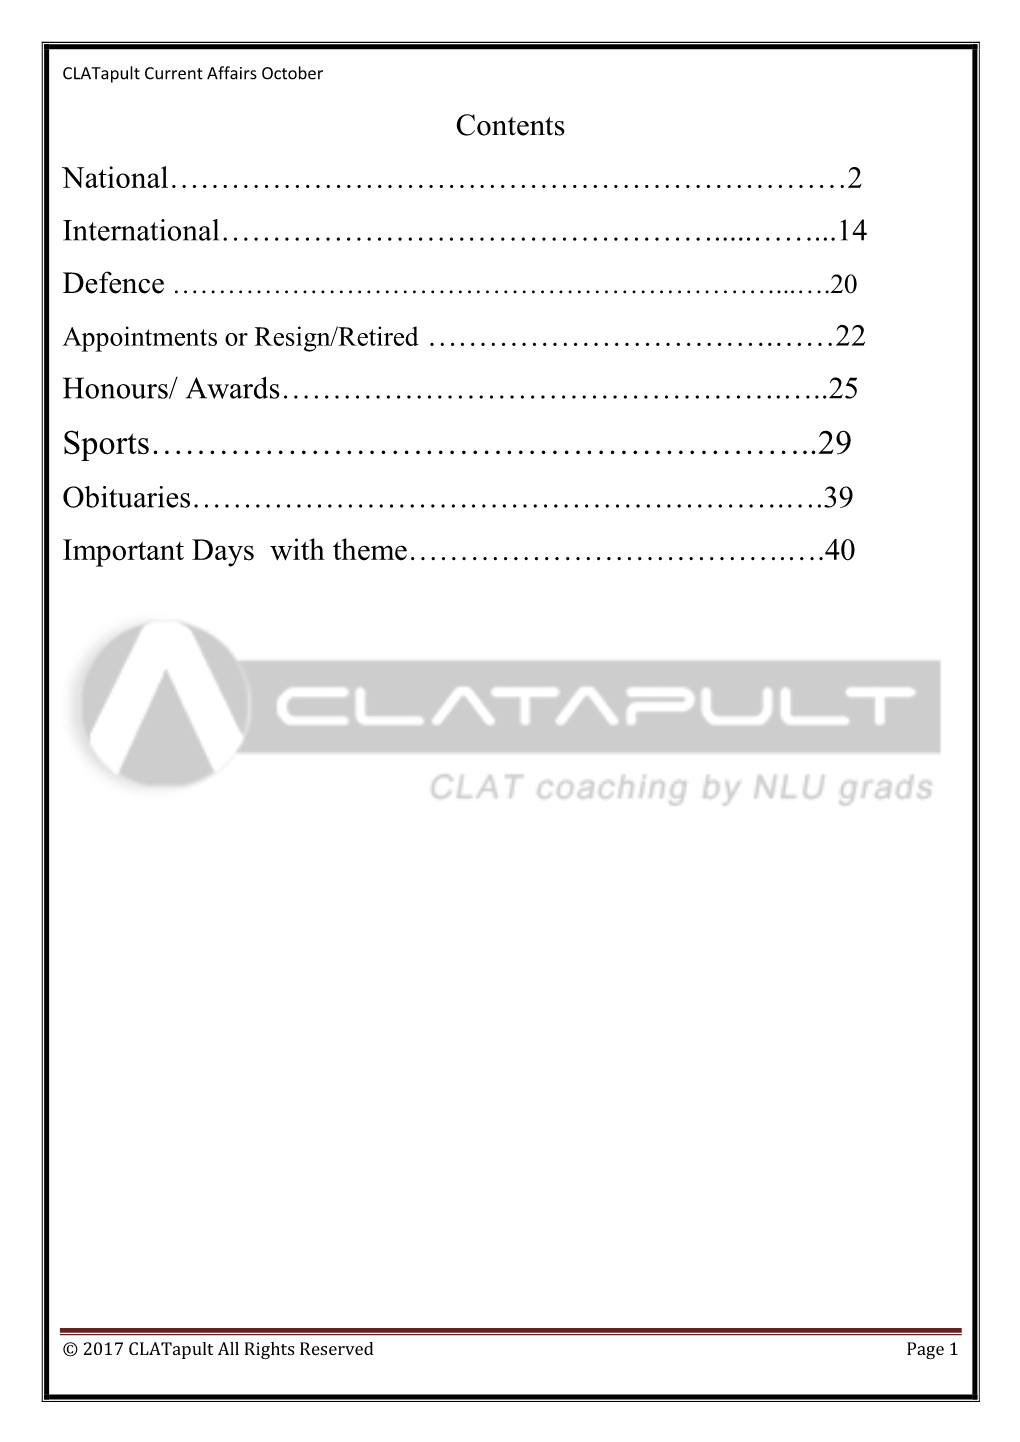 Clatapult Current Affairs October